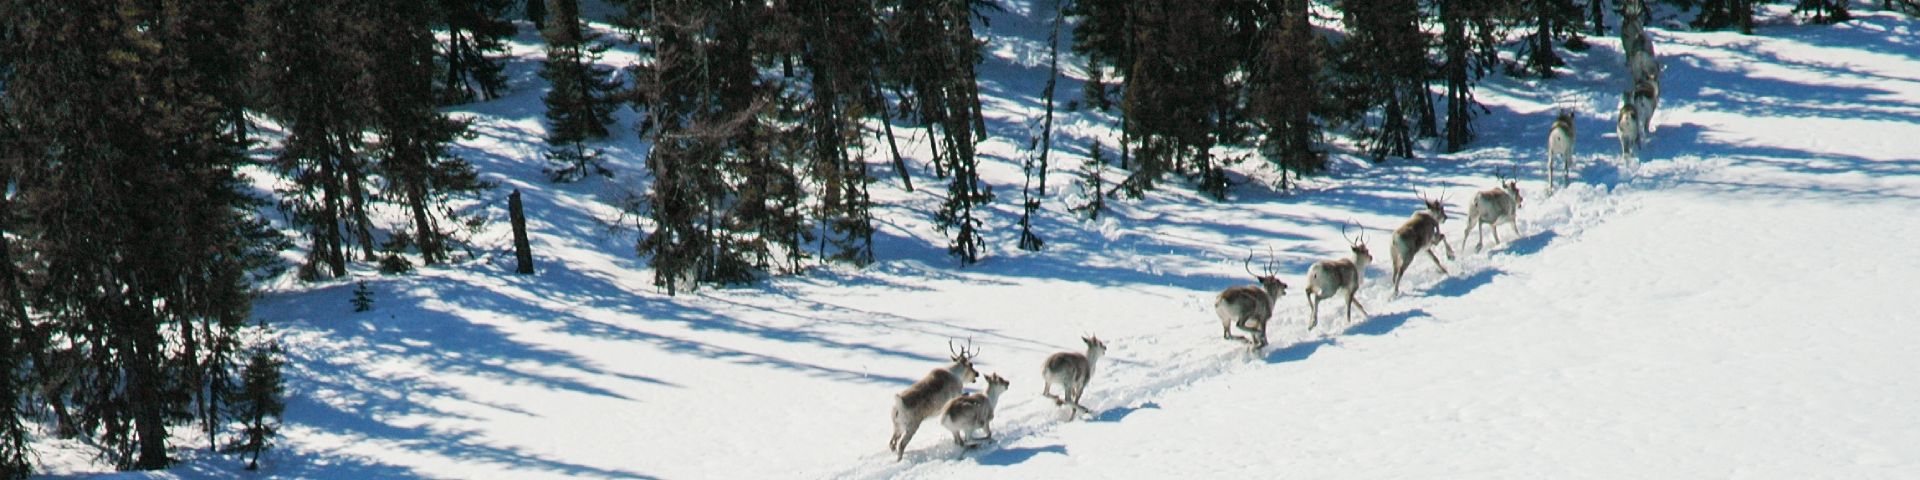 Un groupe de caribous court dans la neige dans la réserve de parc national Akami-Uapishkᵁ-KakKasuak-Mealy Mountains